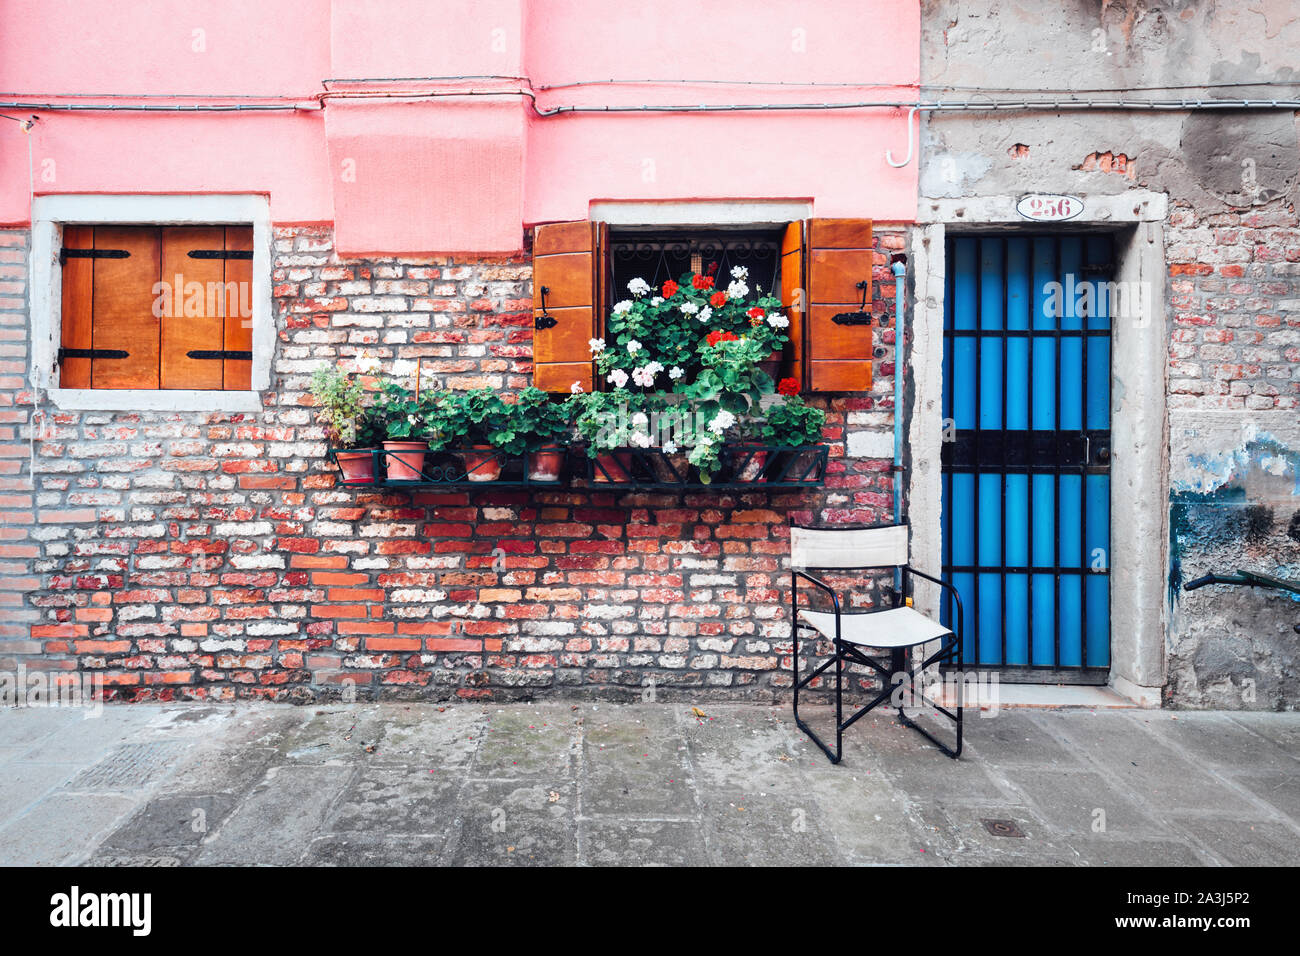 Alte italienische Straße mit Blumen in Töpfe auf rustikalen Wand Hintergrund. Reisen Hintergrund Stockfoto